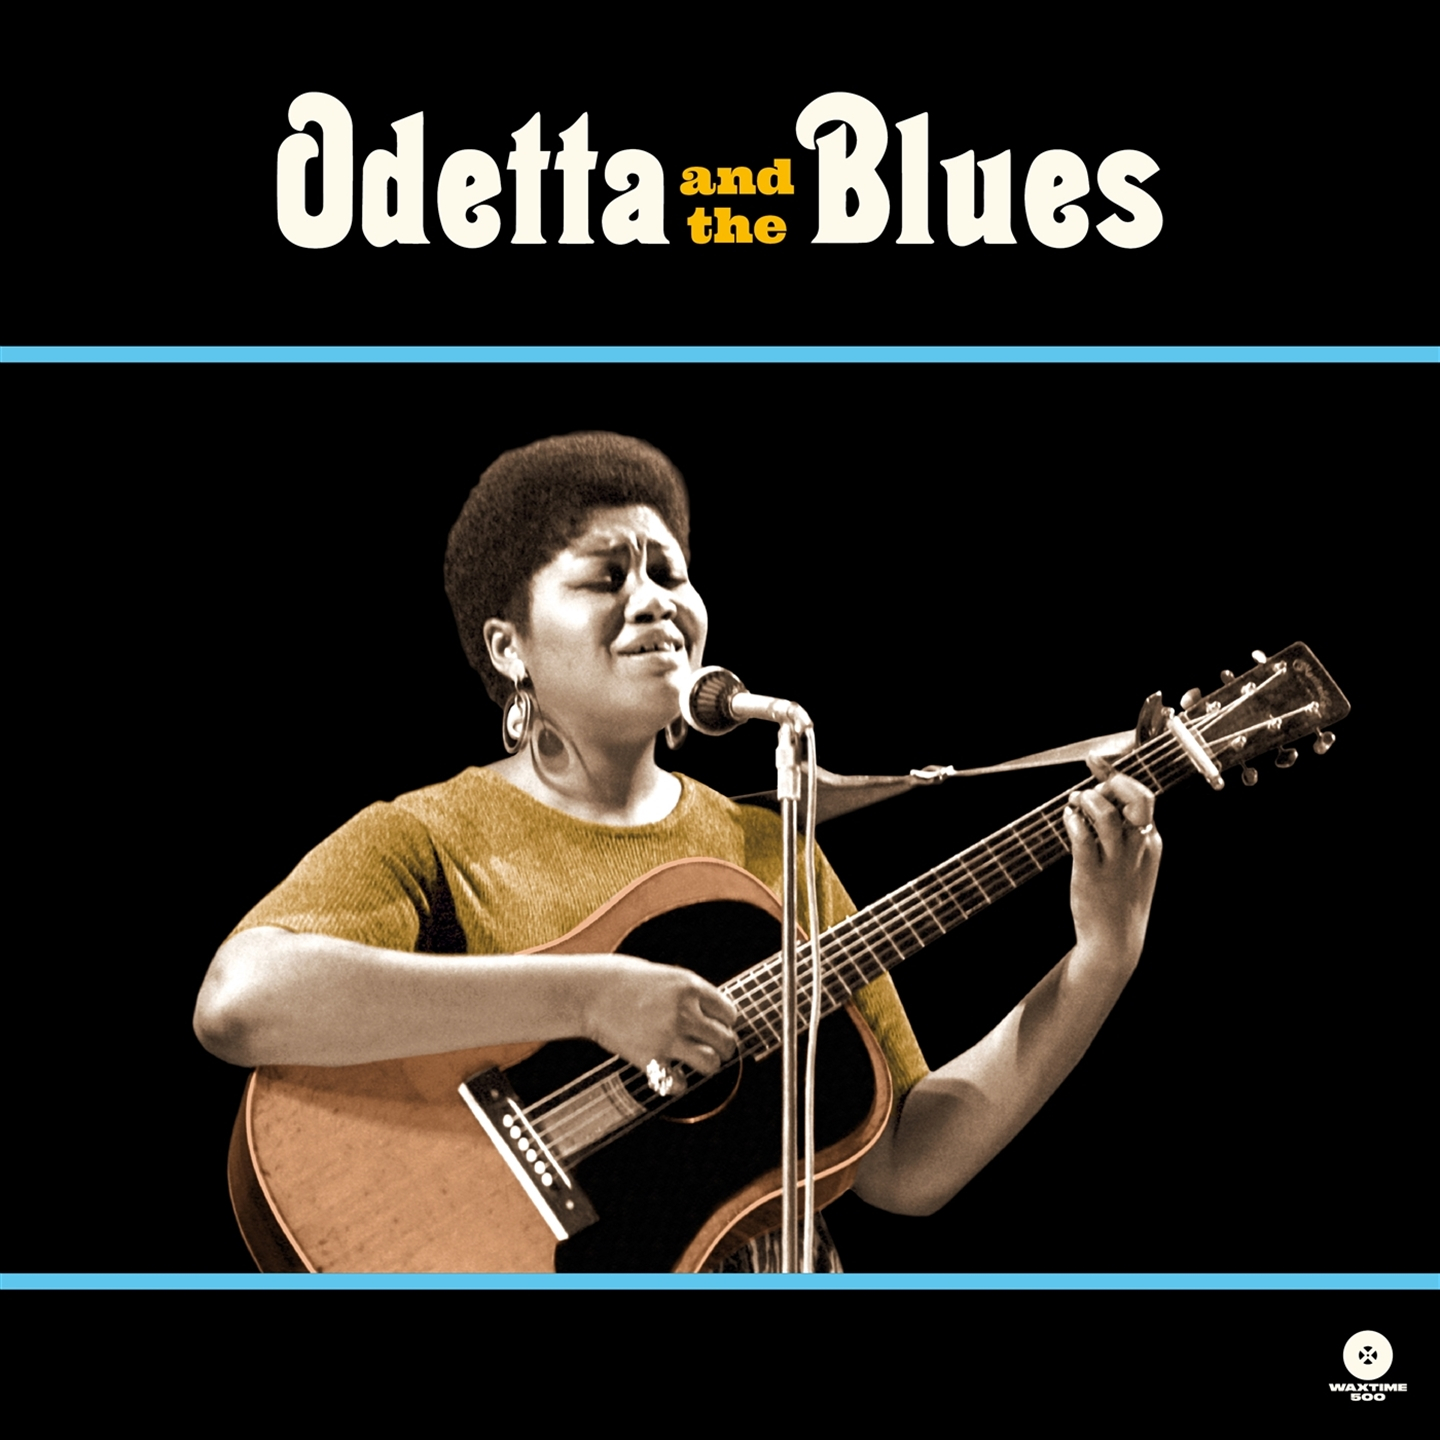 ODETTA AND THE BLUES [LTD ED LP]